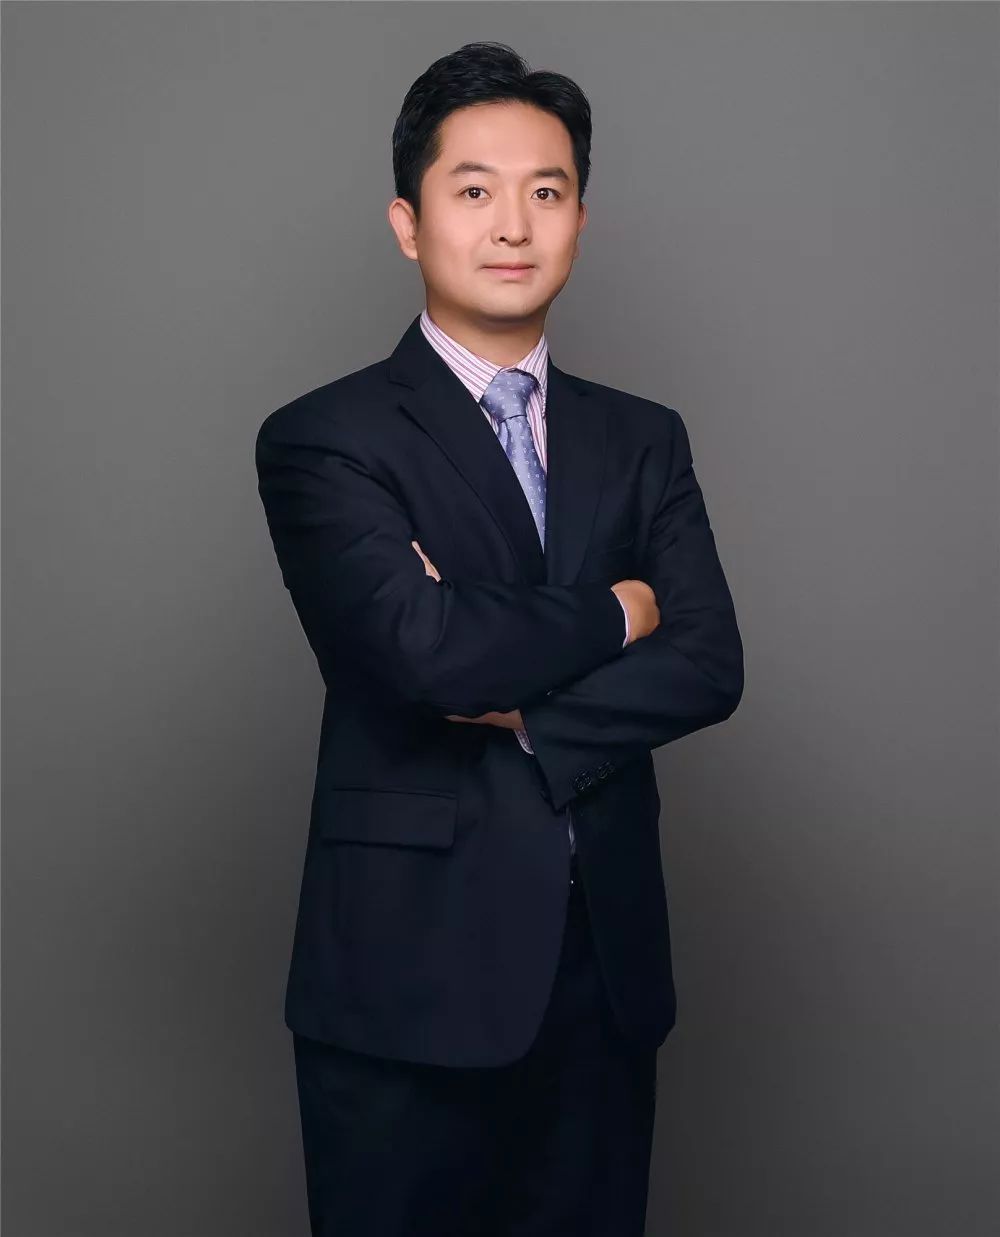 杨琨，南开大学硕士，先后任职于益民基金、天弘基金、安邦人寿、诺安基金，从事行业研究与投资工作，现任诺安新经济等多只产品的基金经理。